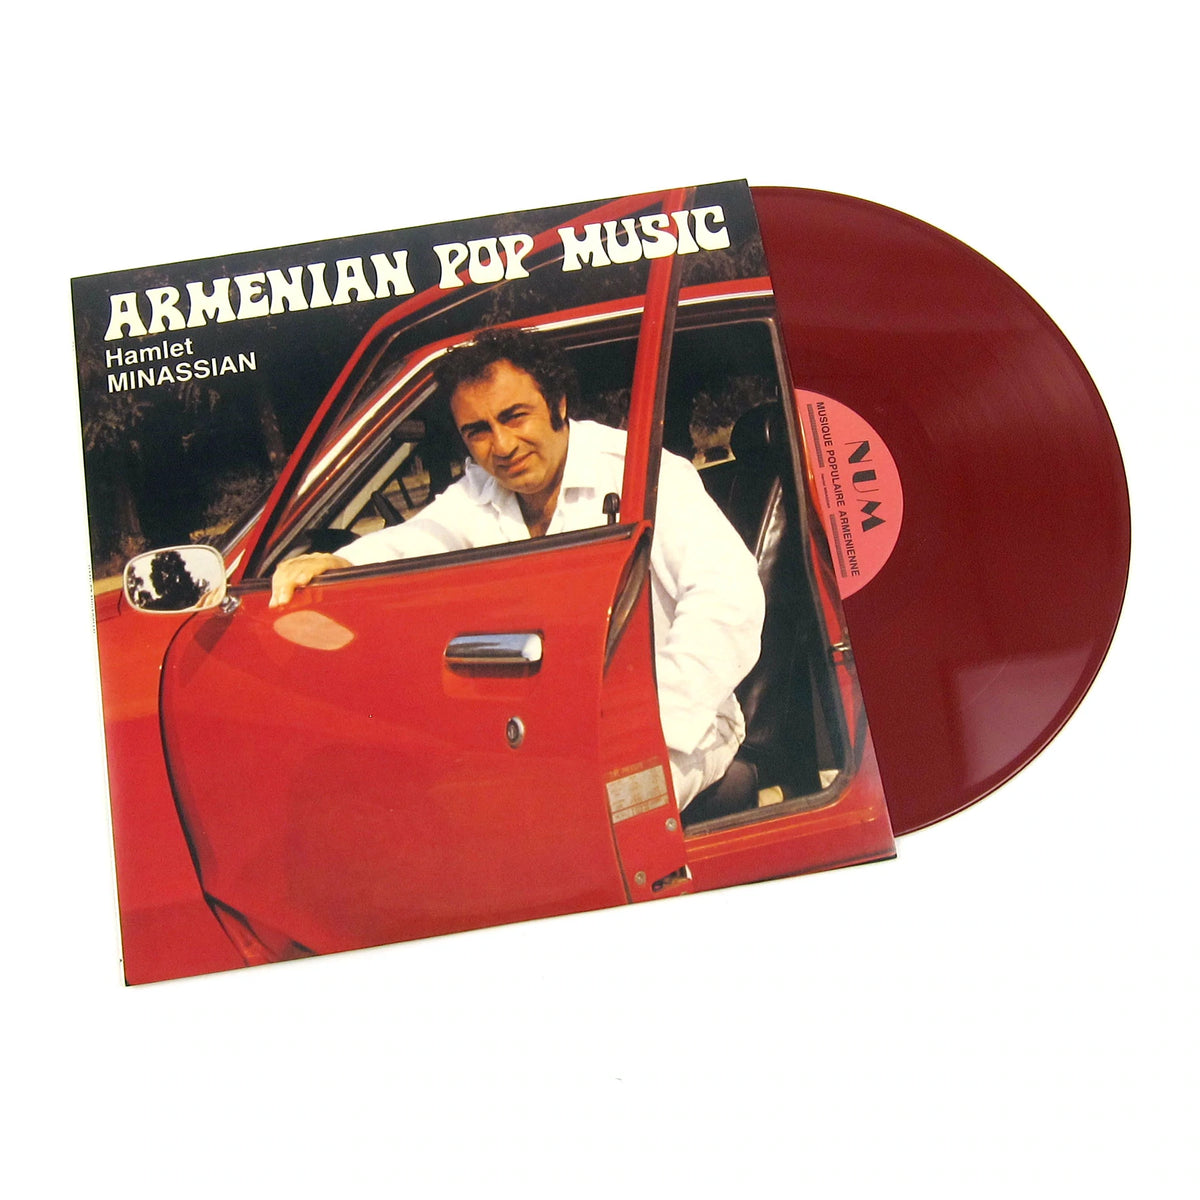 Hamlet Minassian - Armenian Pop Music LP